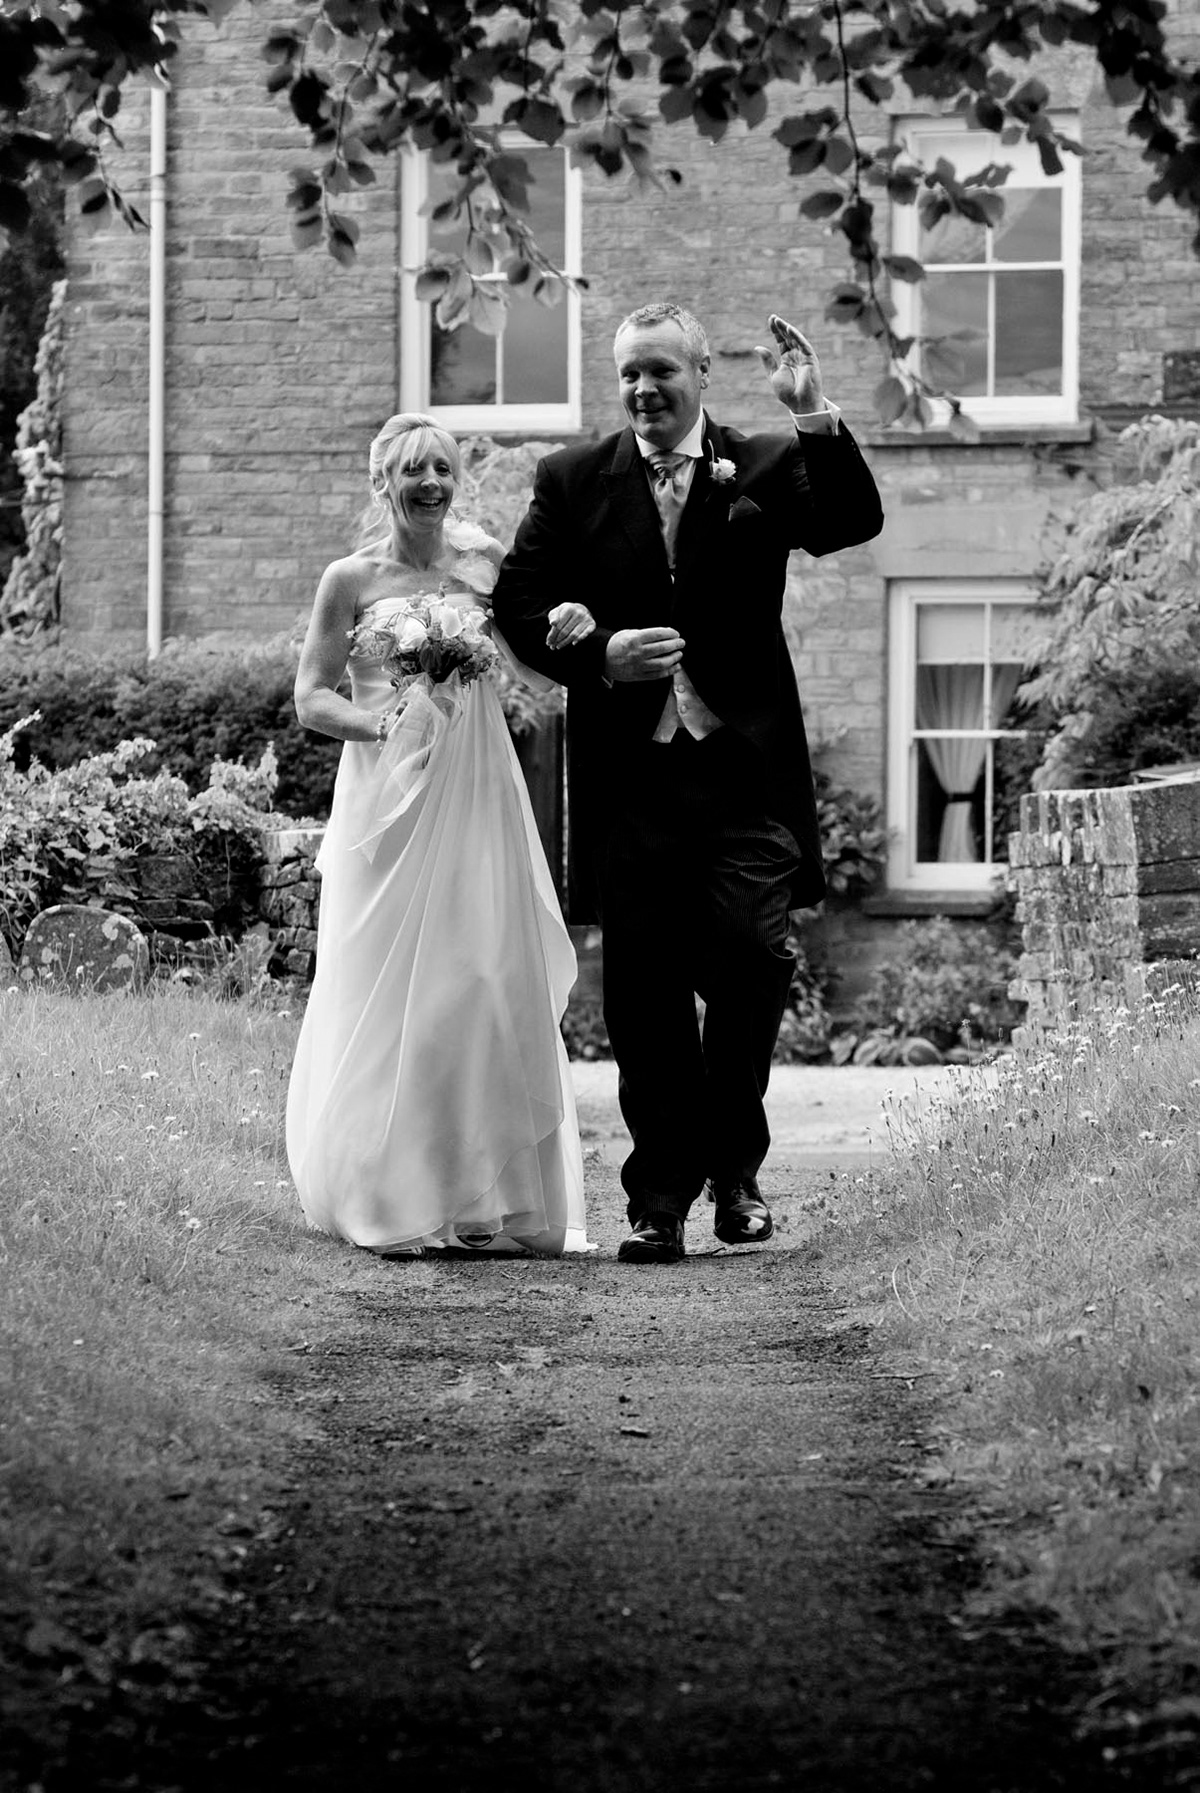 wedding marriage Wedding Photography portrait portrait photography wedding reportage social documentary